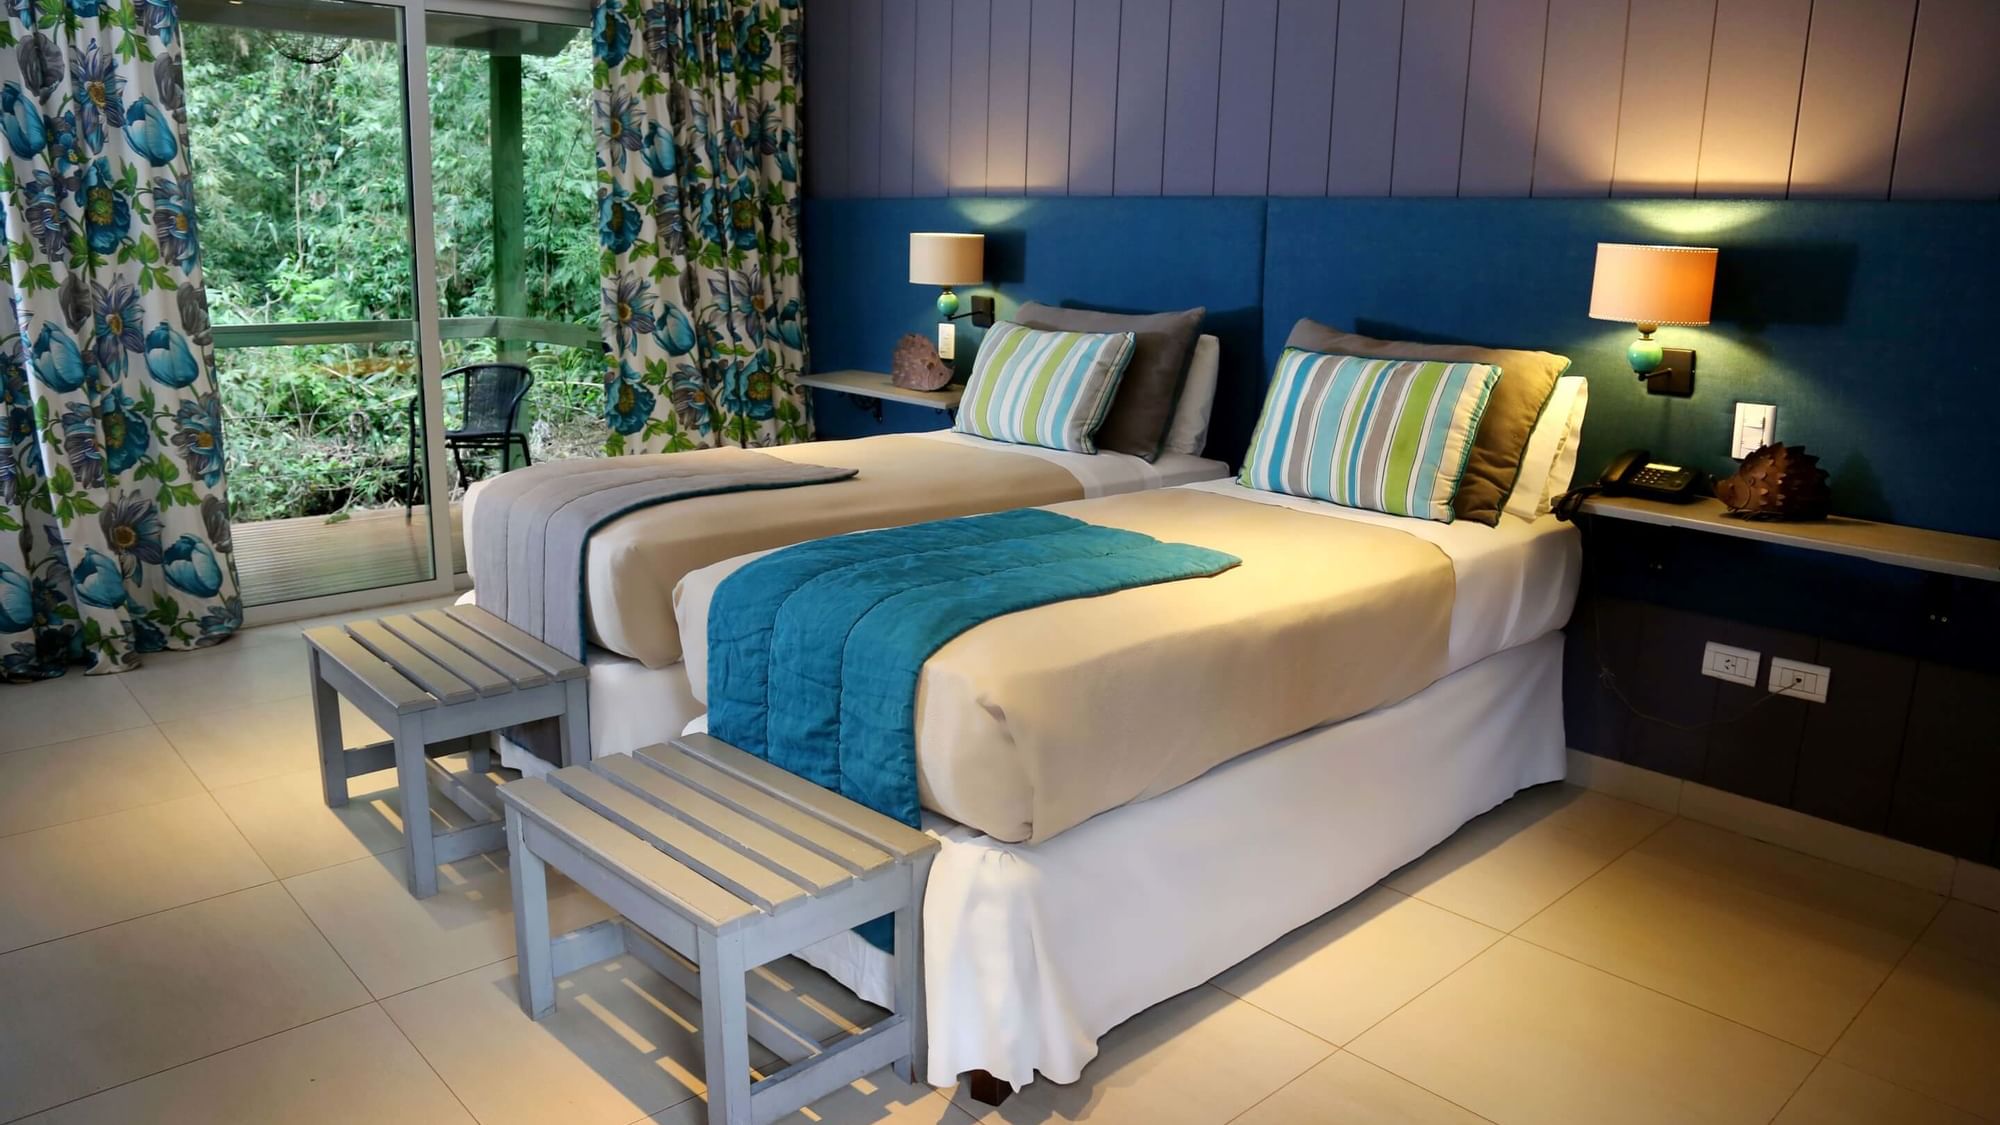 Bedroom arrangement in Forest Room at DOT Hotels